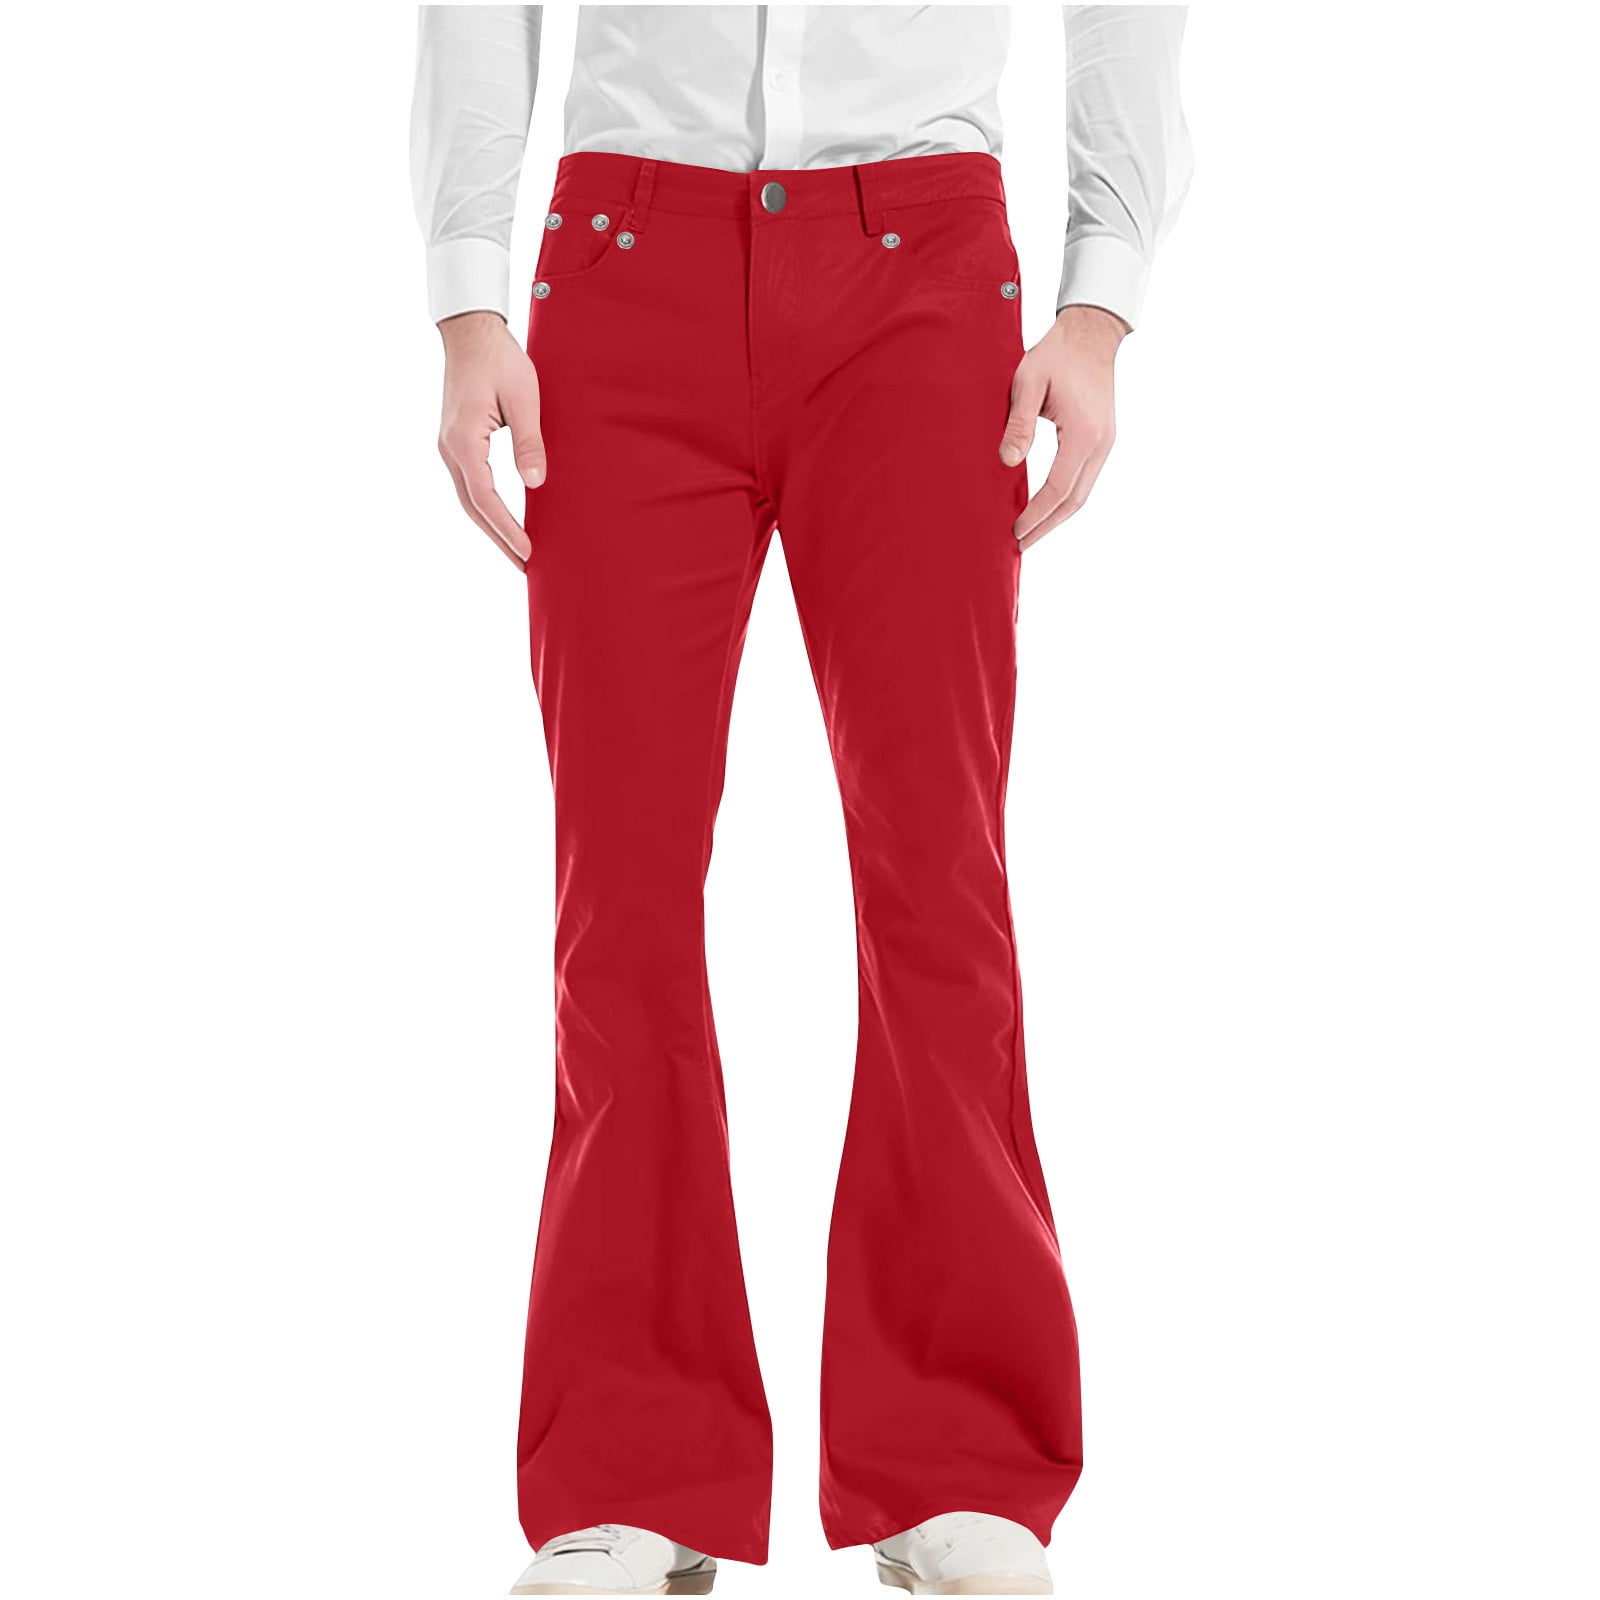 70s Disco Pants for Men,Mens Bell Bottom Jeans Pants,60s 70s Bell Bottoms  Denim Pants Jeans for Men with Pocket